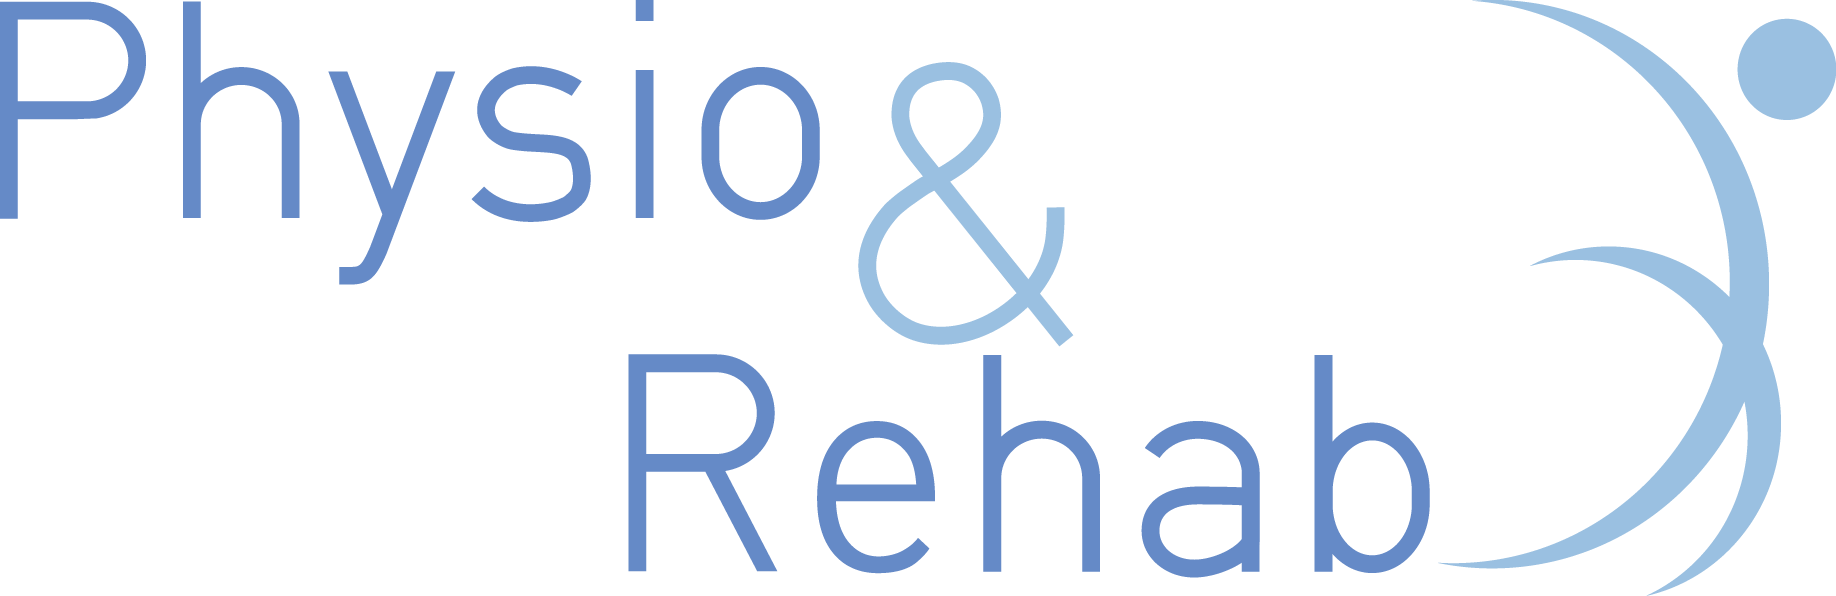 R10 - Physio Rehab logo